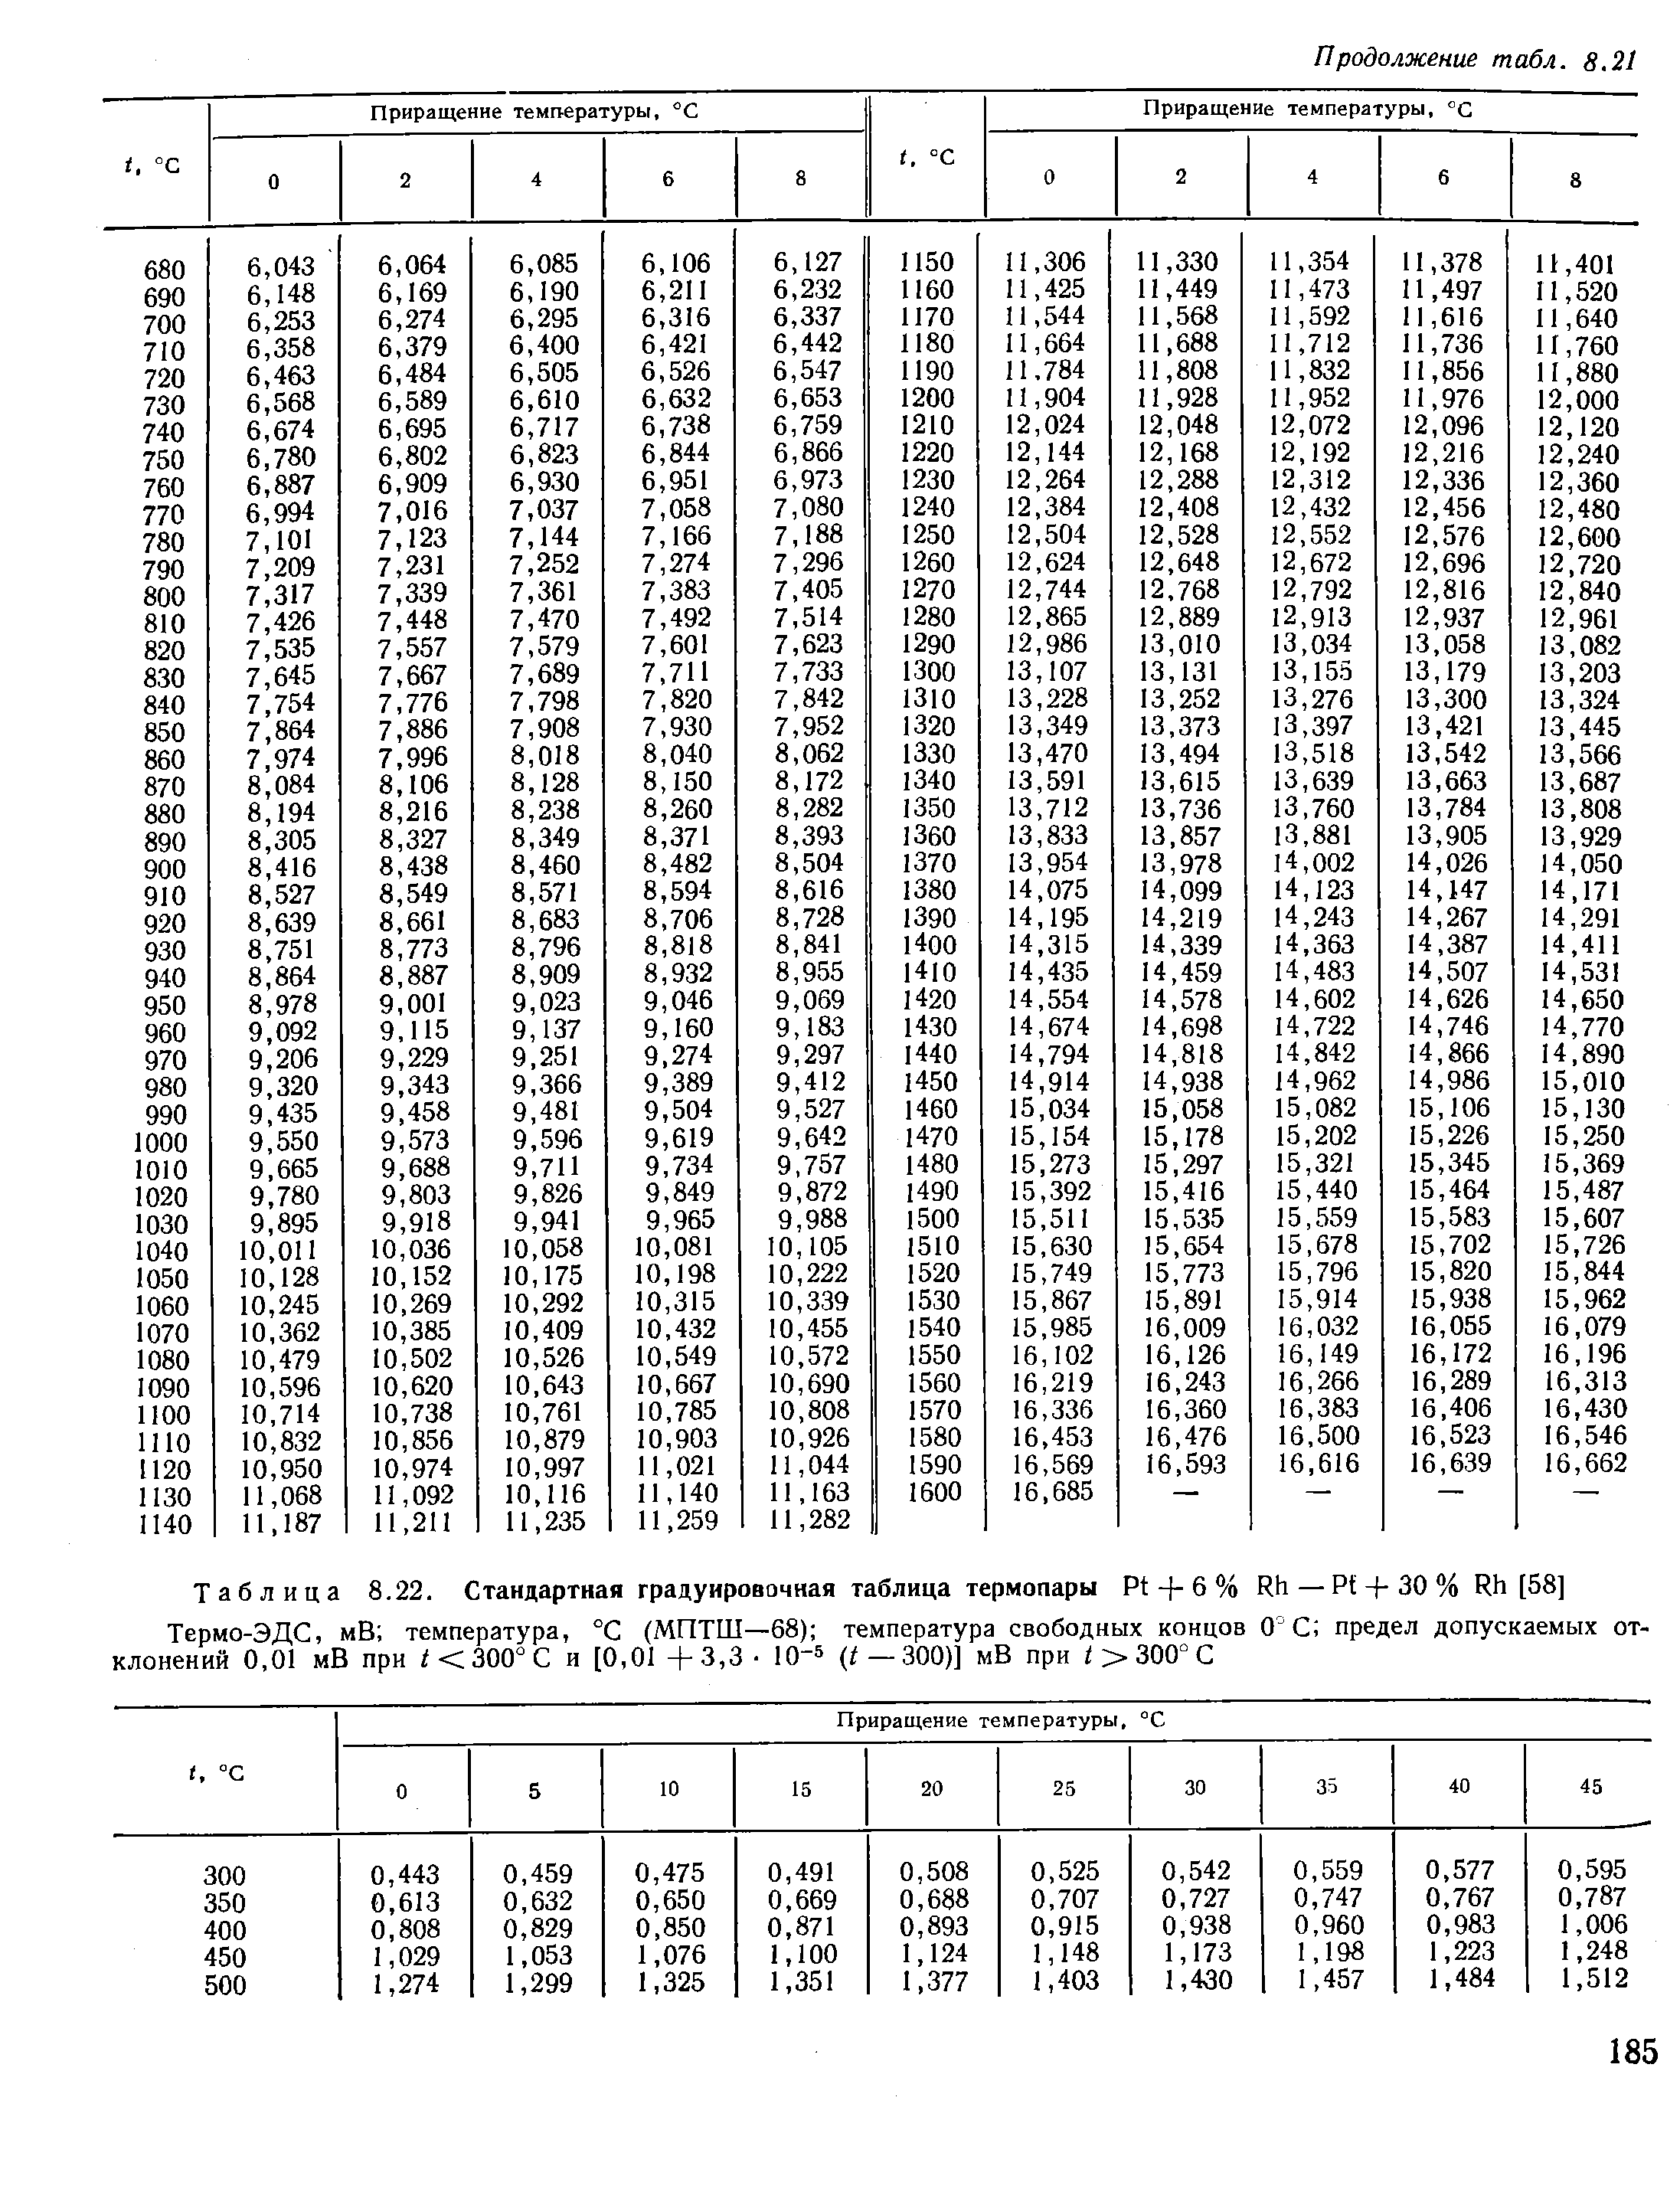 Таблица 8.22. Стандартная градуировочная таблица термопары Pt + 6 % Rh—Pf-f-30 % Rh [58]
